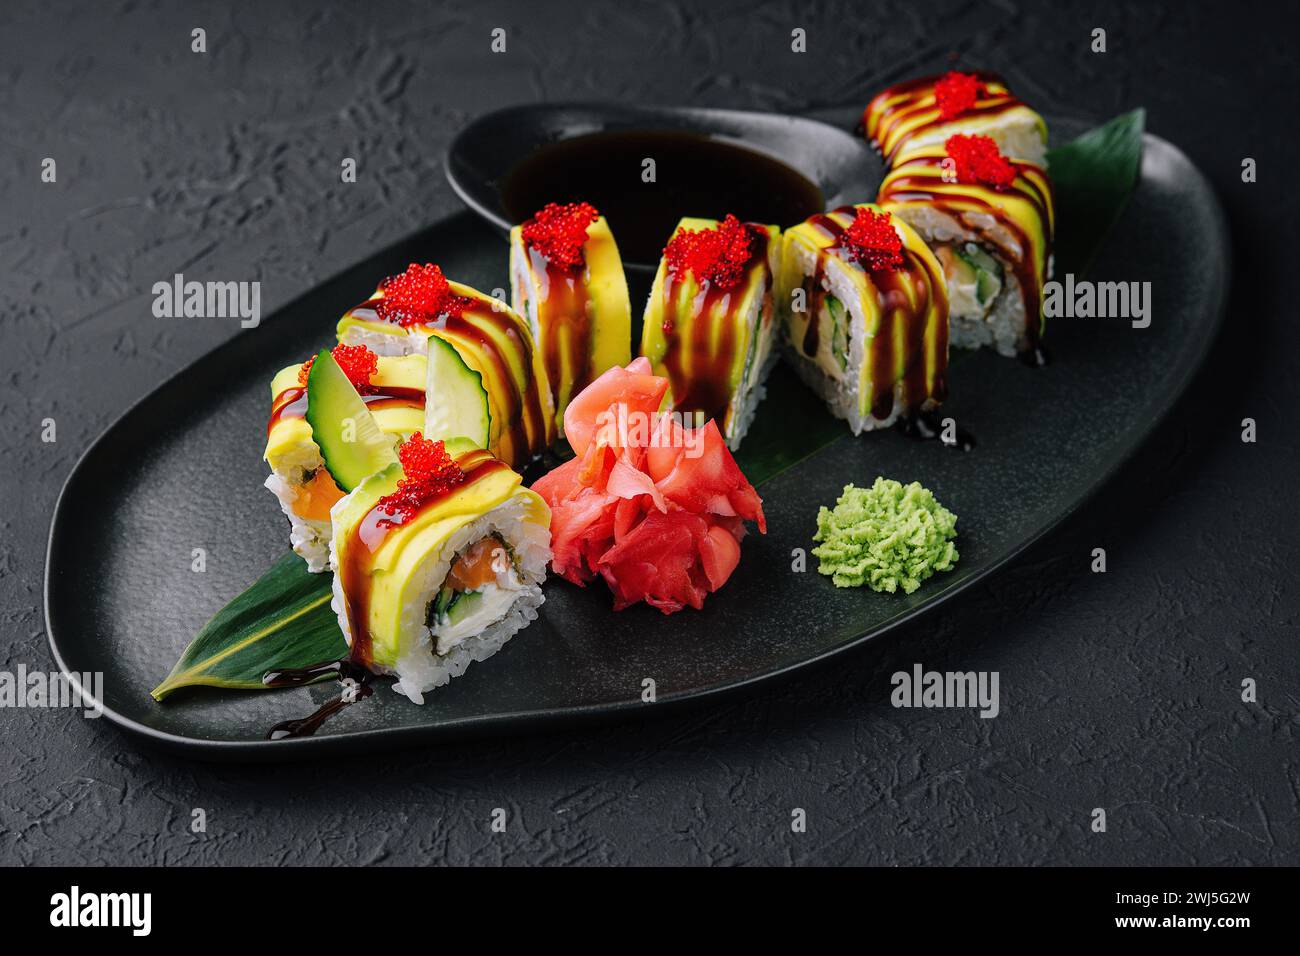 Rouleau de sushi dragon vert avec anguille sur pierre noire Banque D'Images